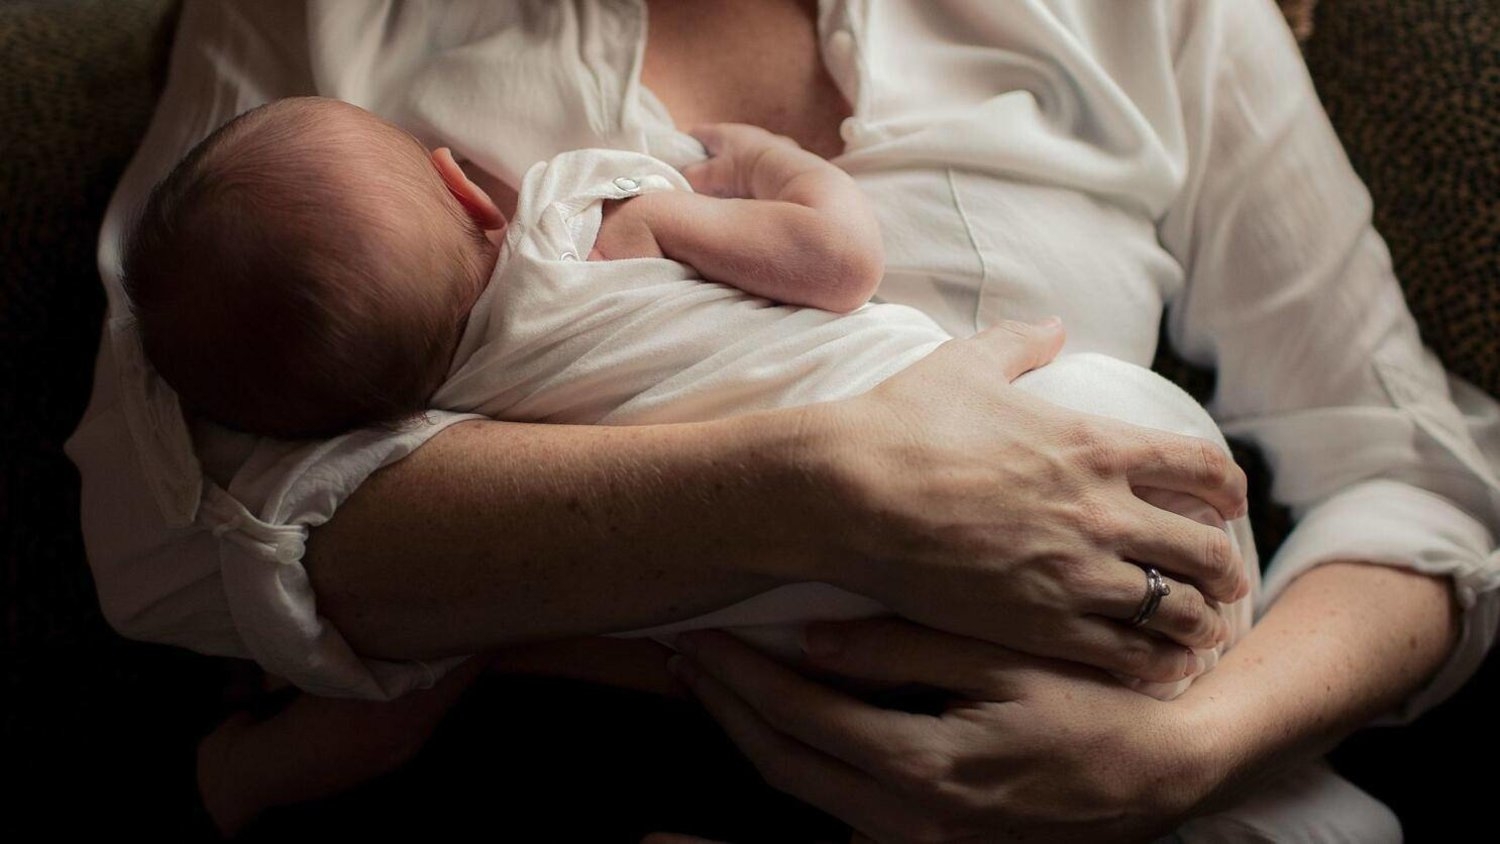 الرضاعة الطبيعية تُخفّض مخاطر سمنة الأطفال